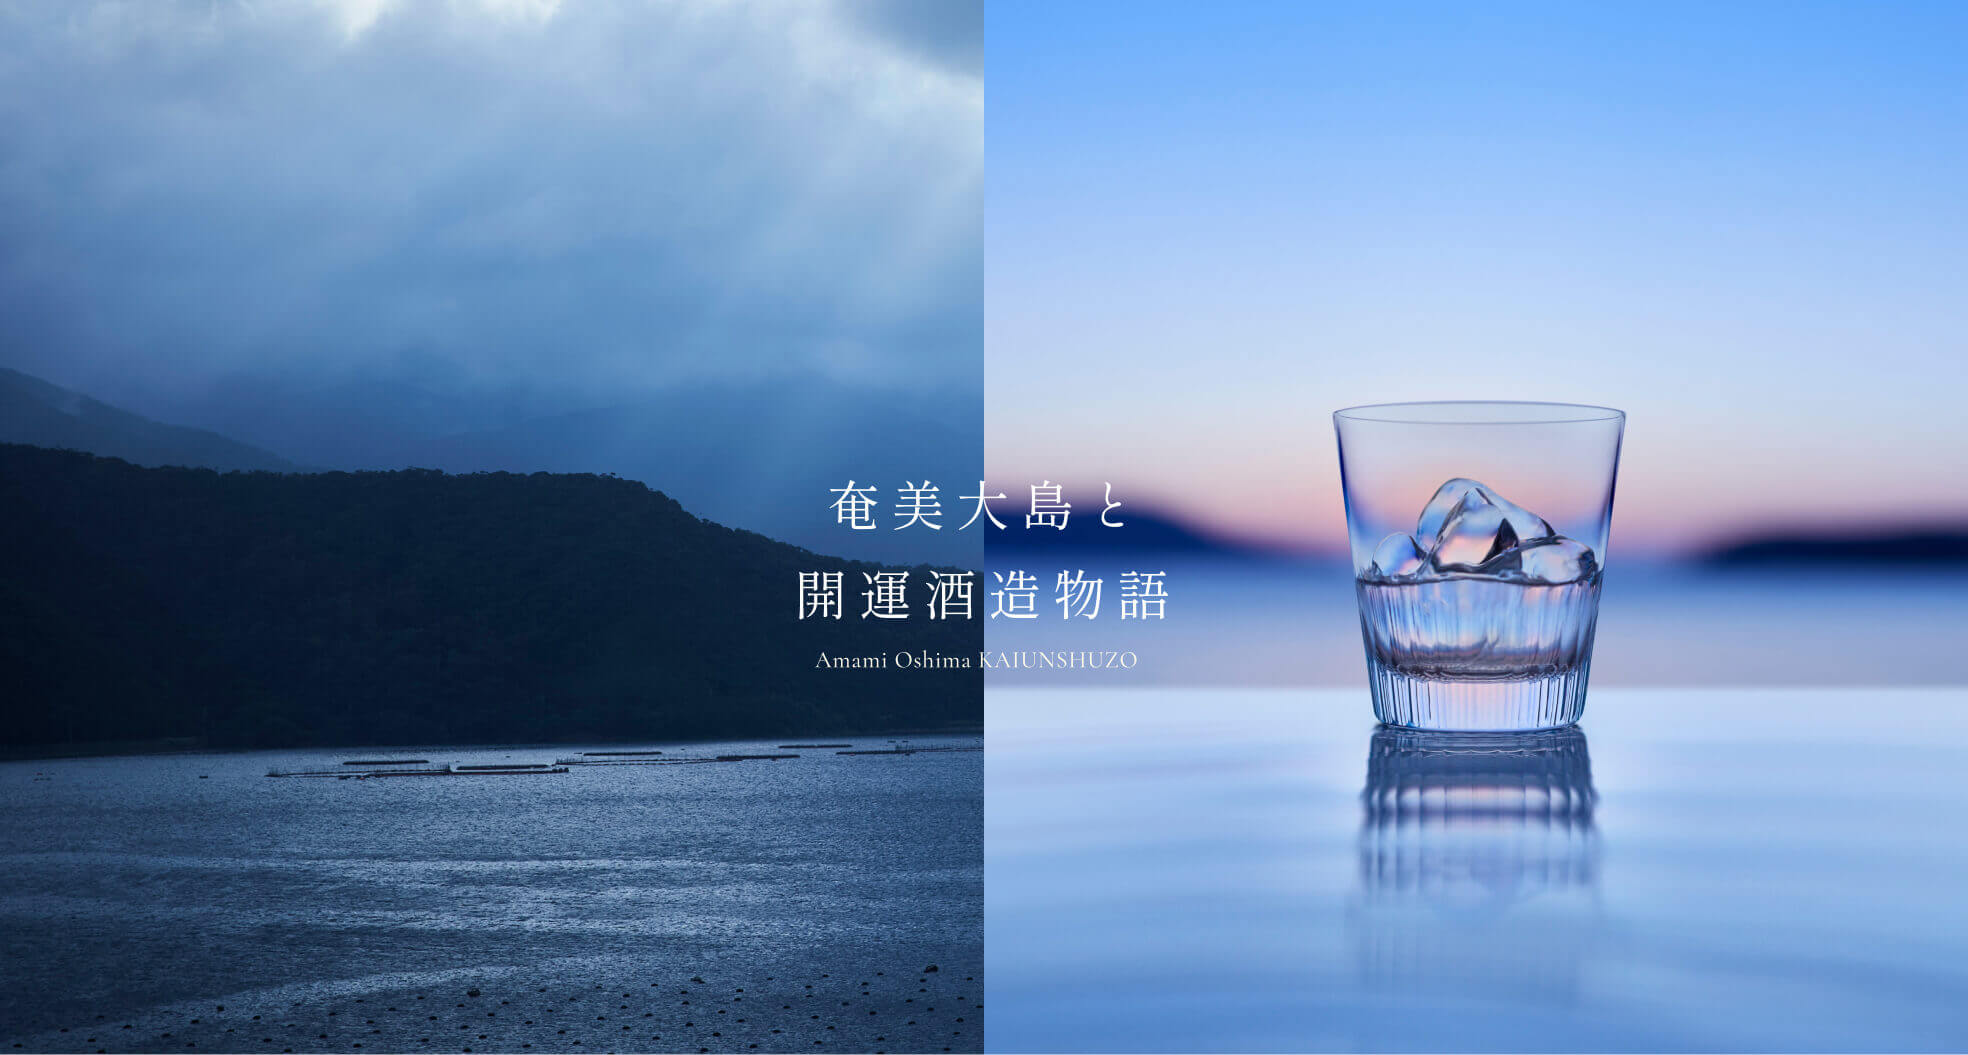 【制作実績】奄美大島開運酒造さまのサイトを制作しました